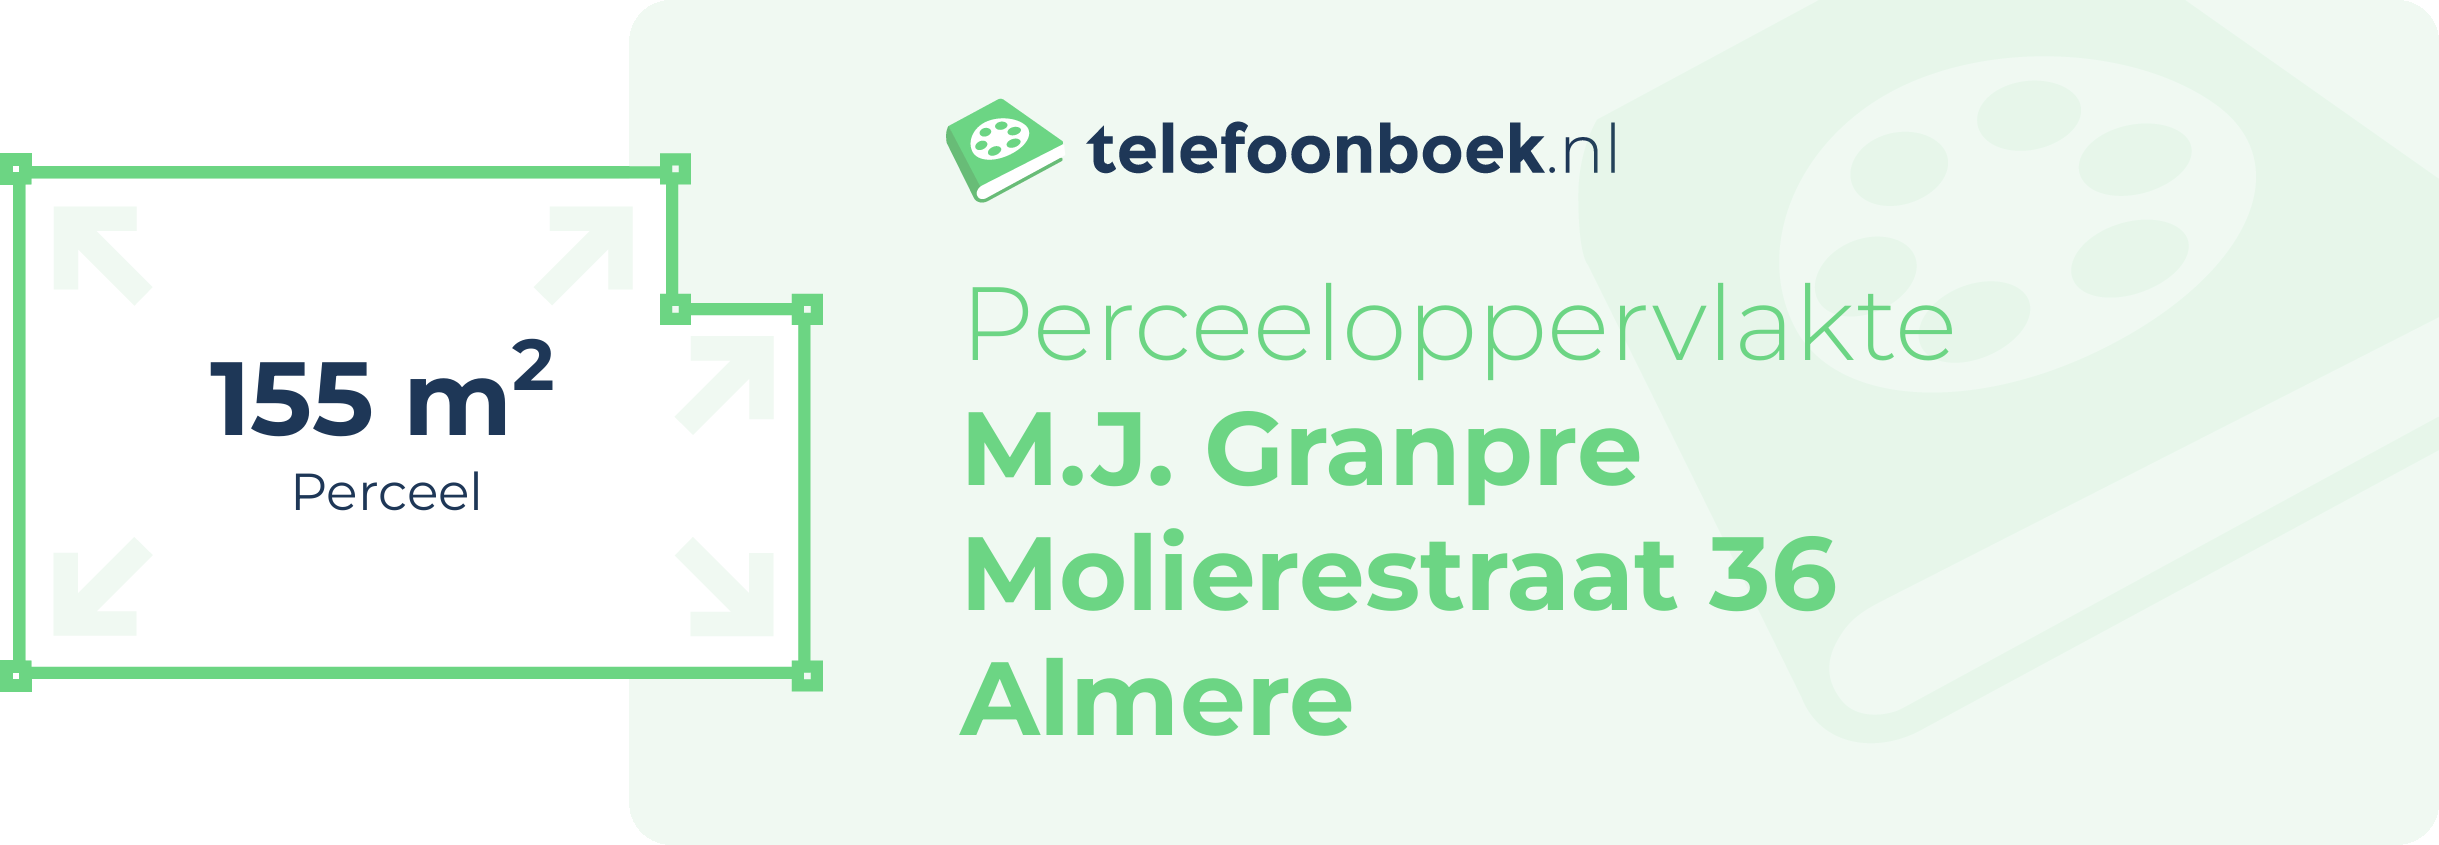 Perceeloppervlakte M.J. Granpre Molierestraat 36 Almere